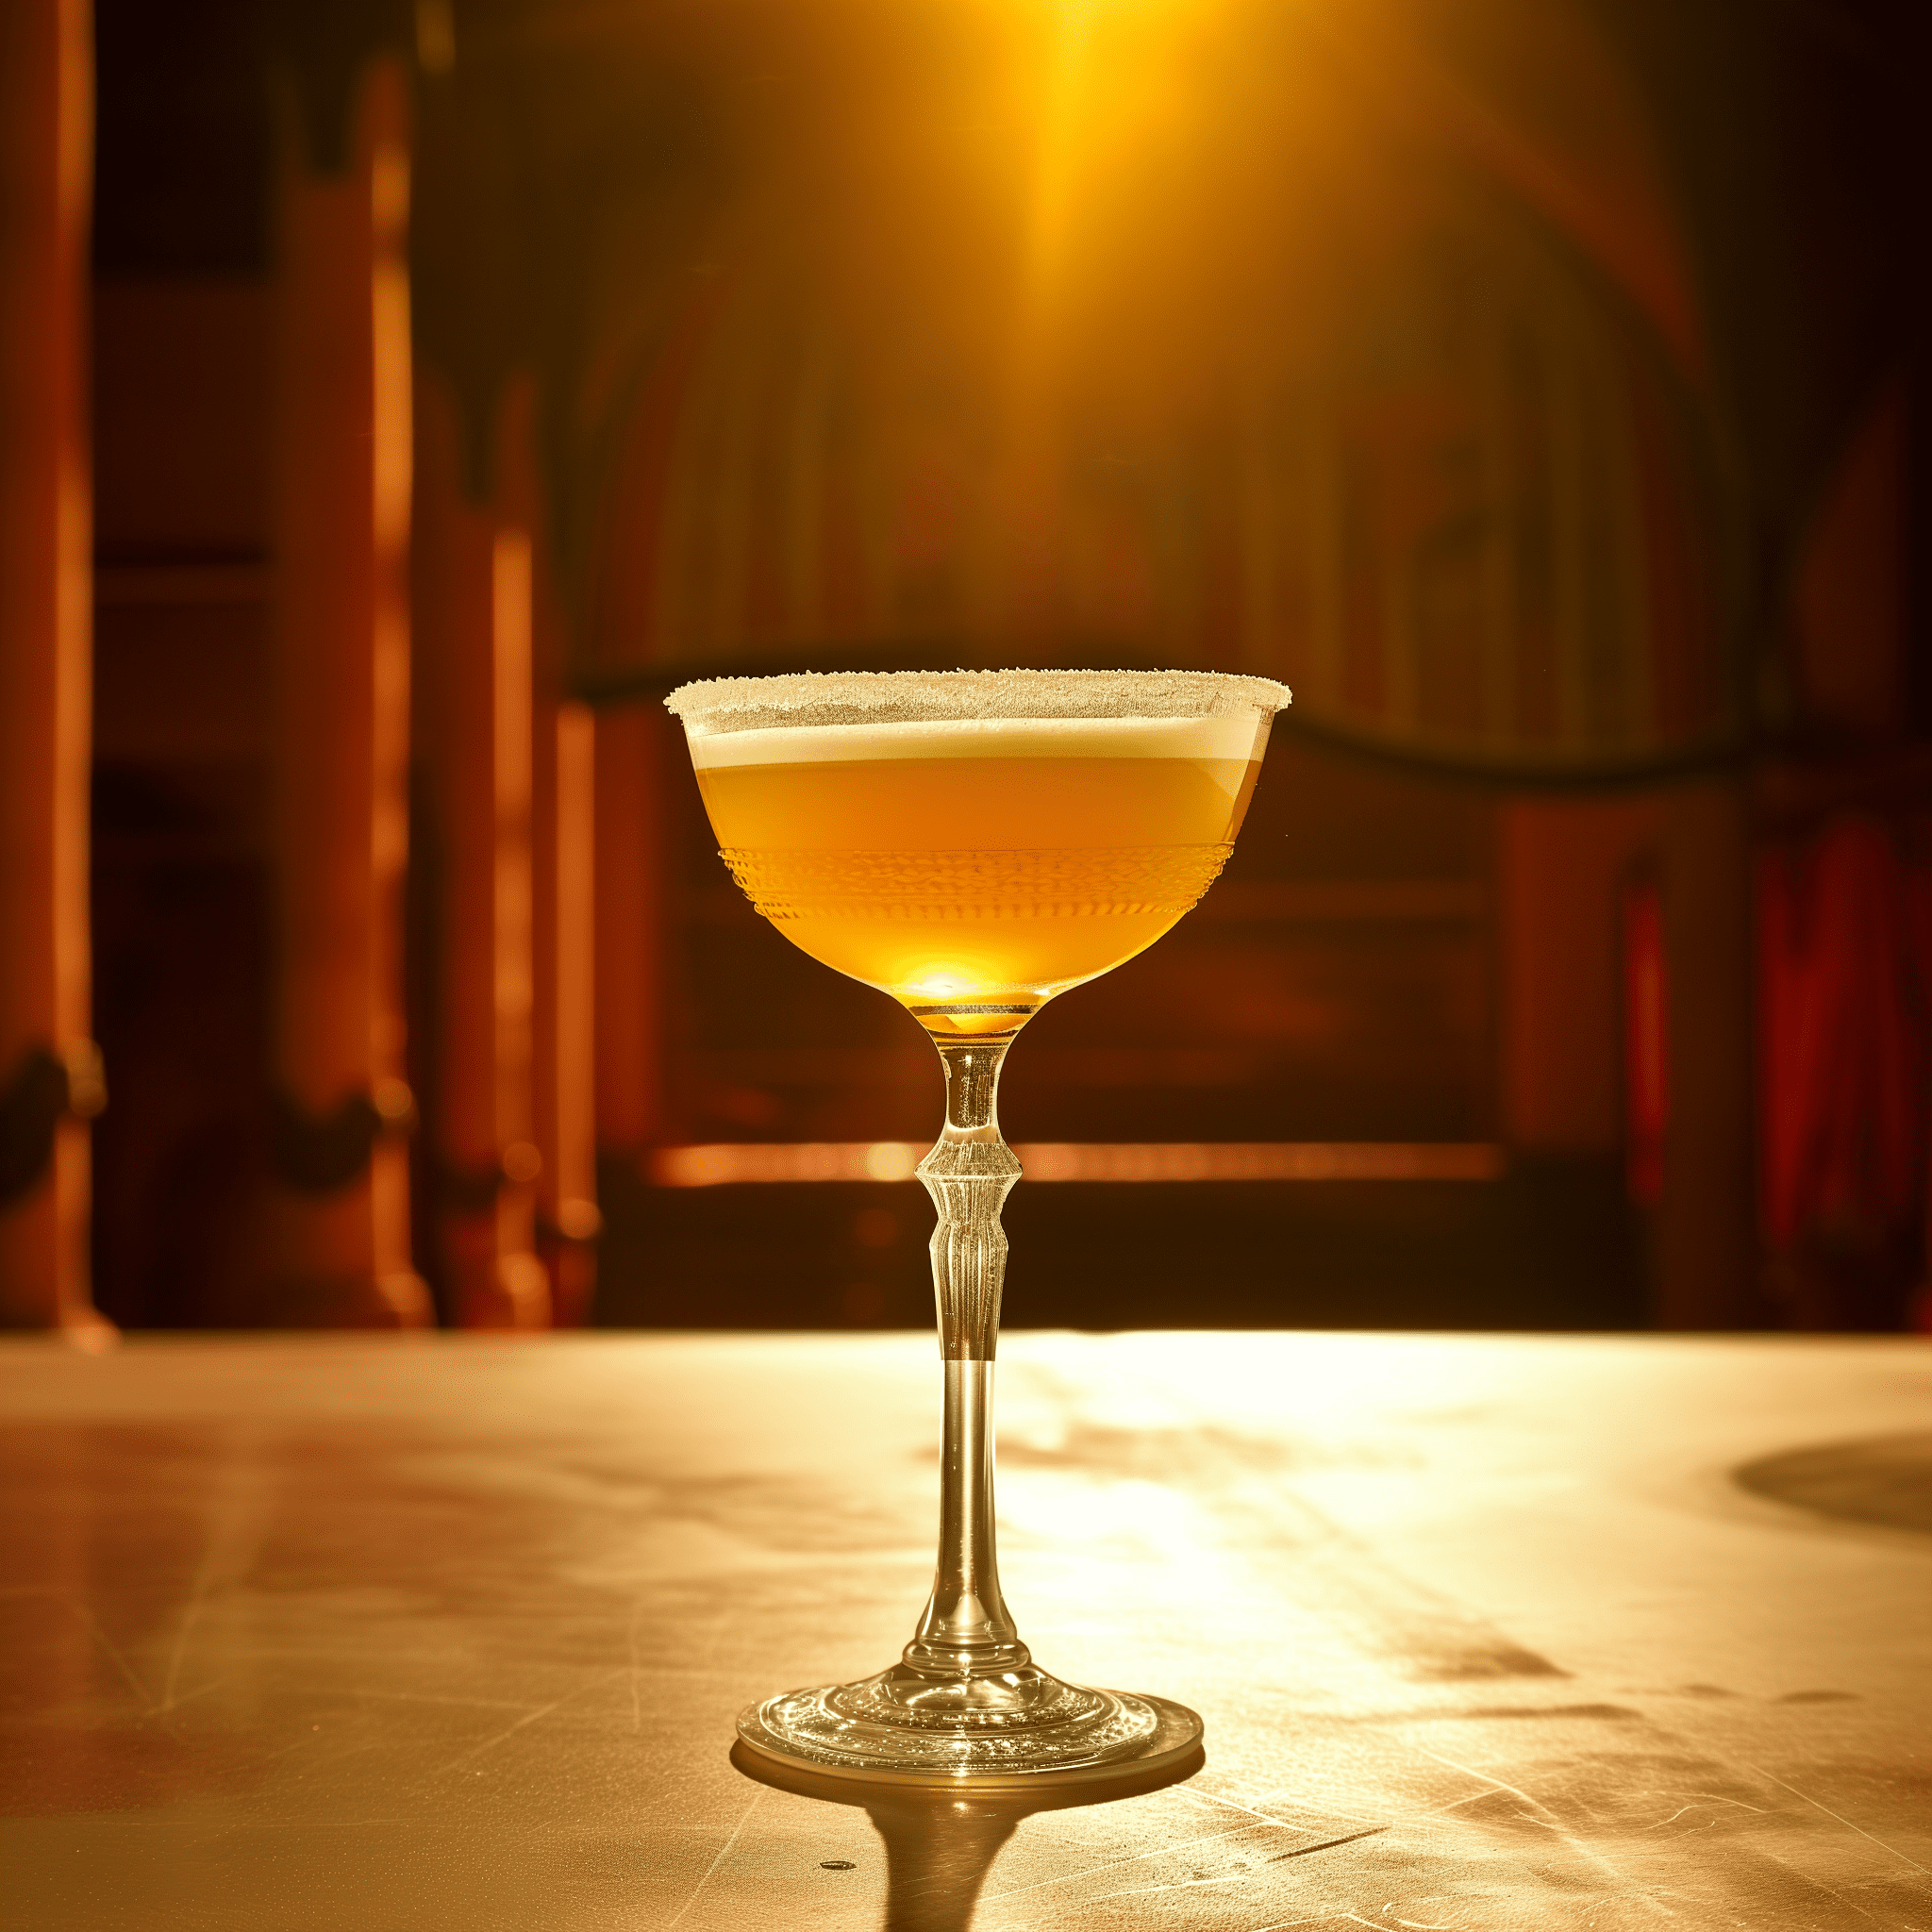 El Toreador es una mezcla armoniosa de dulce y ácido, con una robusta base de tequila. El brandy de albaricoque añade una dulzura afrutada que complementa la nitidez del jugo de lima, creando un cóctel que es refrescante y complejo.